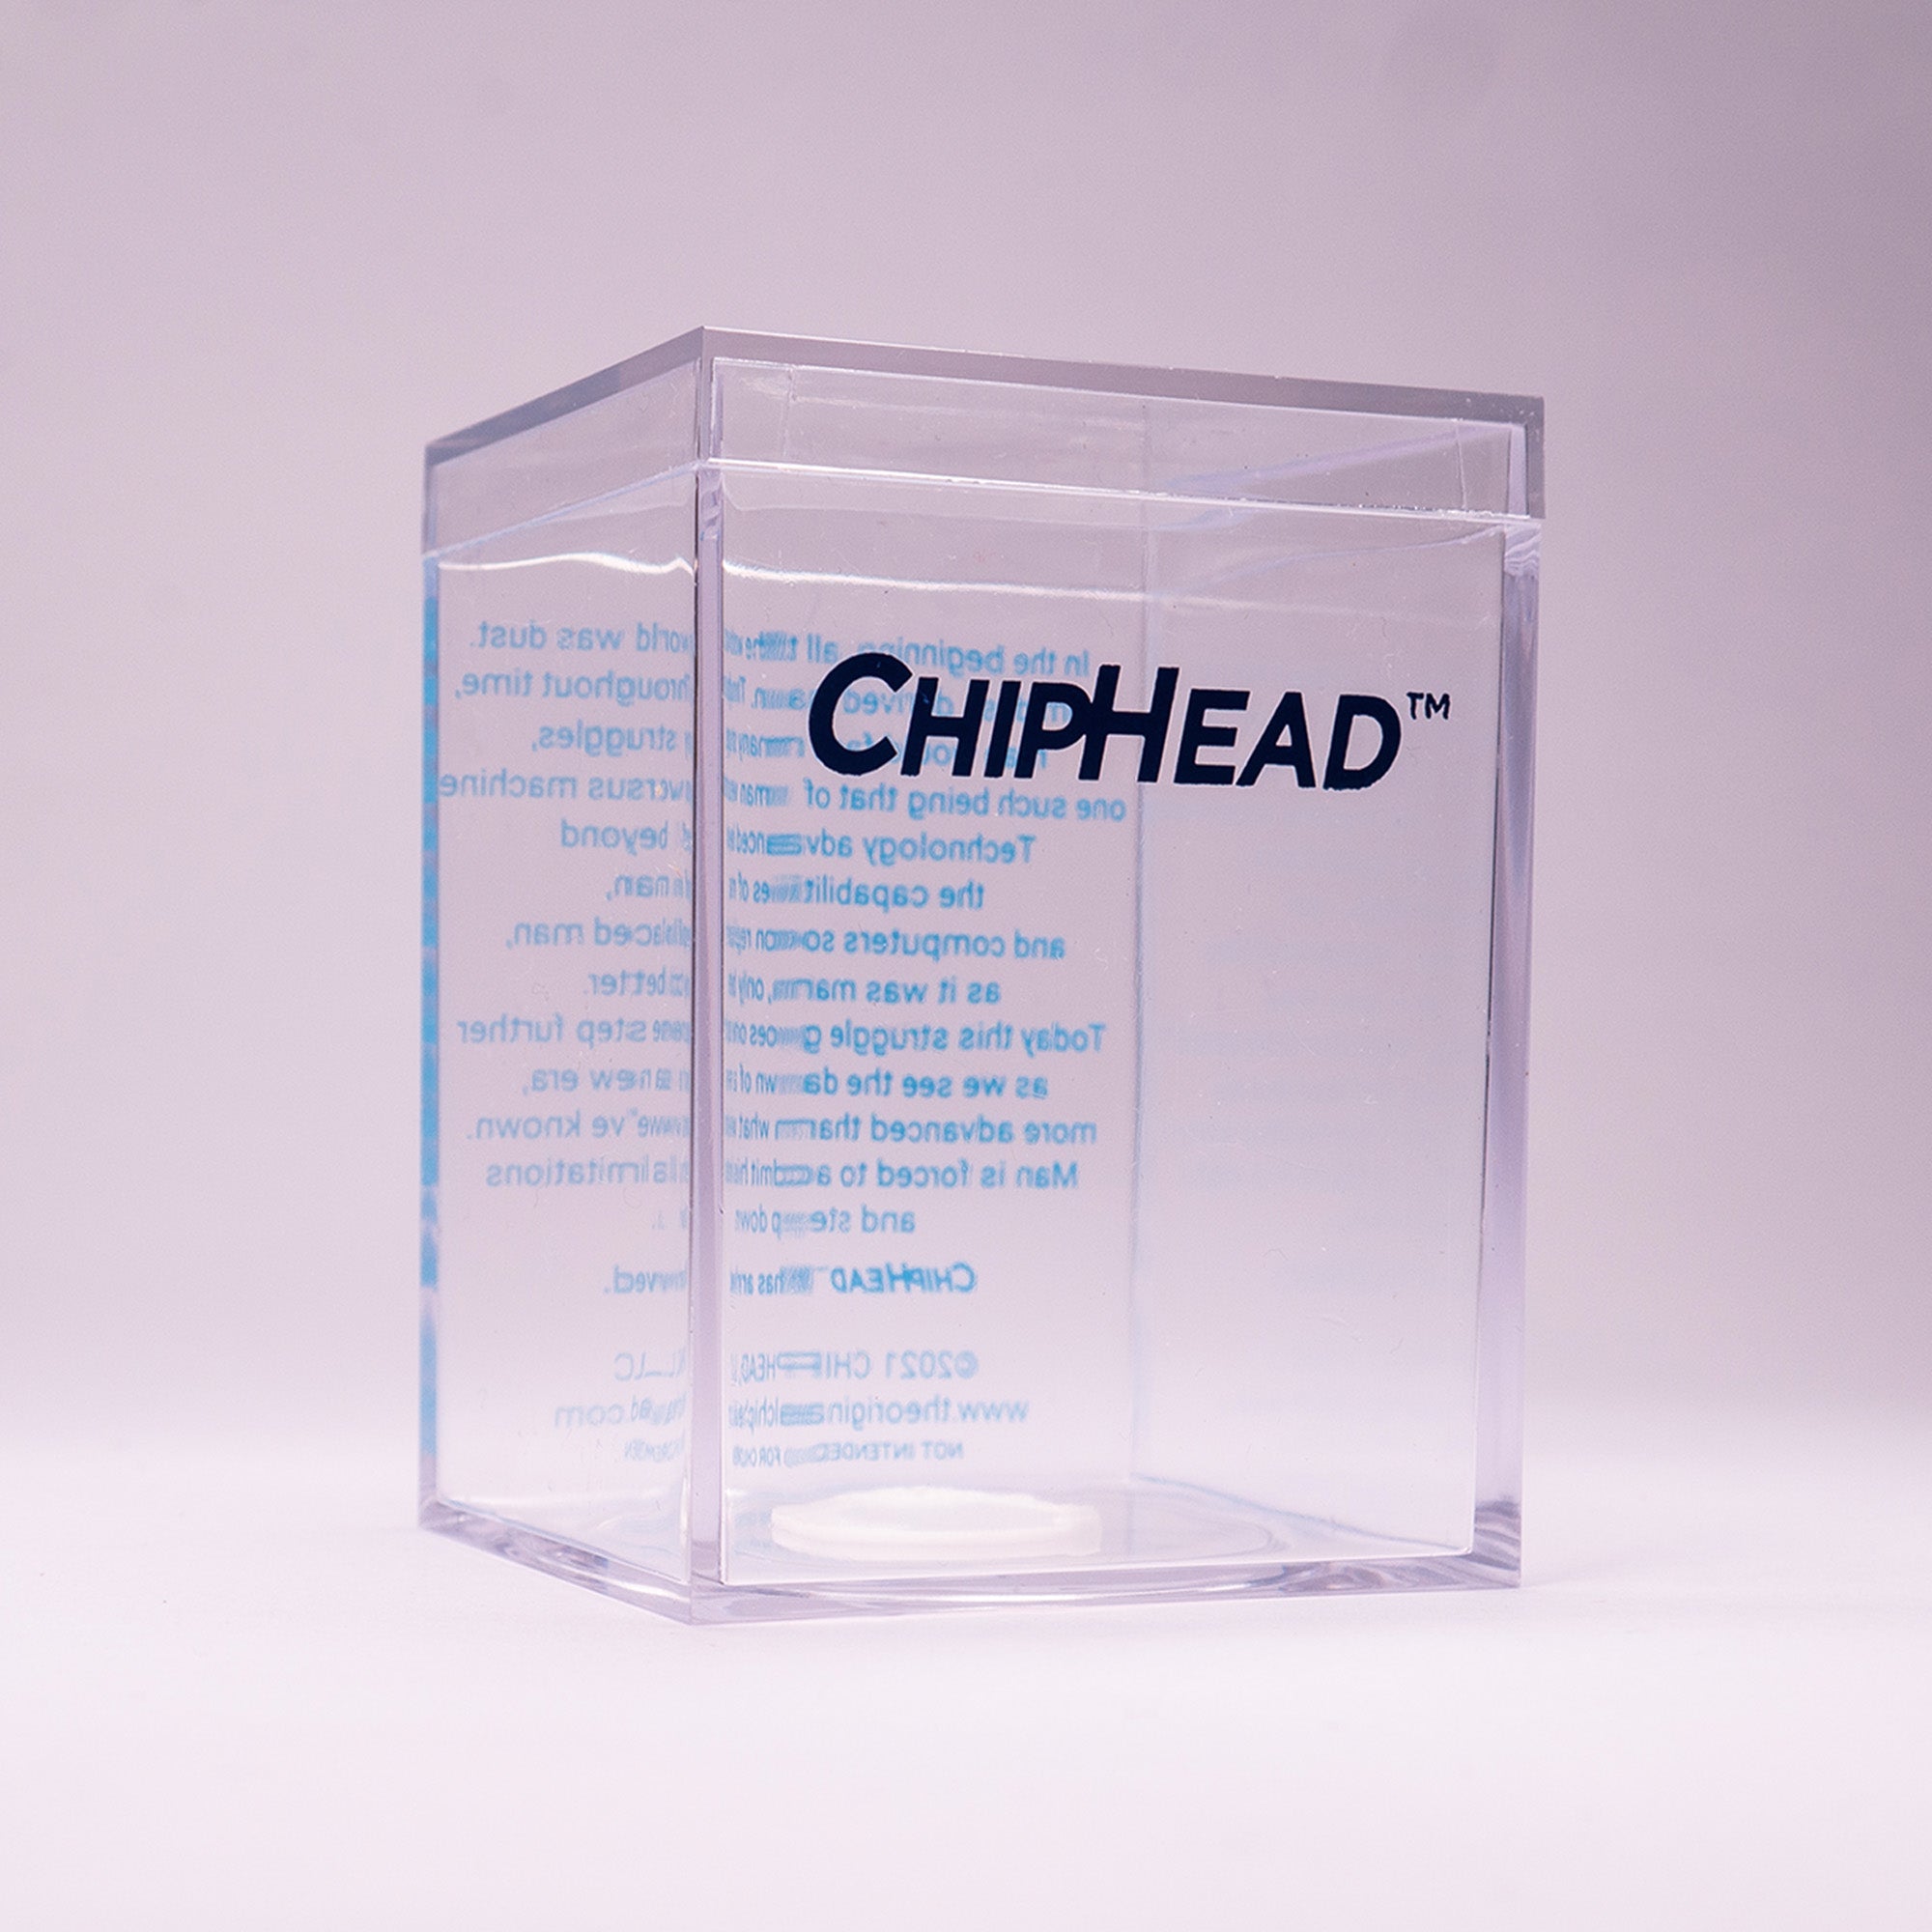 The Original ChipHead